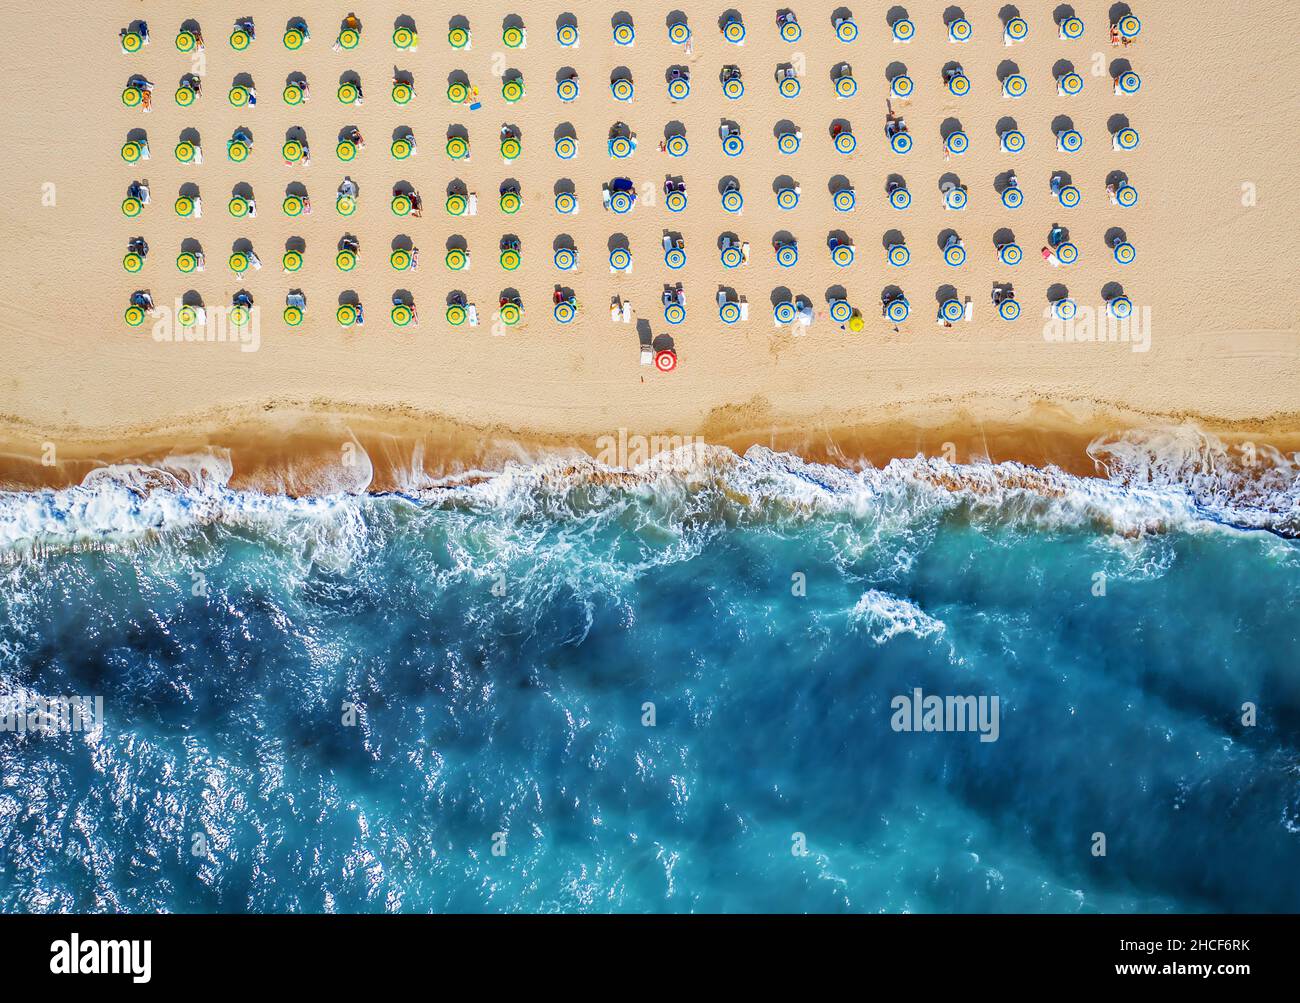 Blick von oben auf den Strand mit Strohschirmen. Regenschirme, Sand- und Meereswellen-Landschaft. Stockfoto